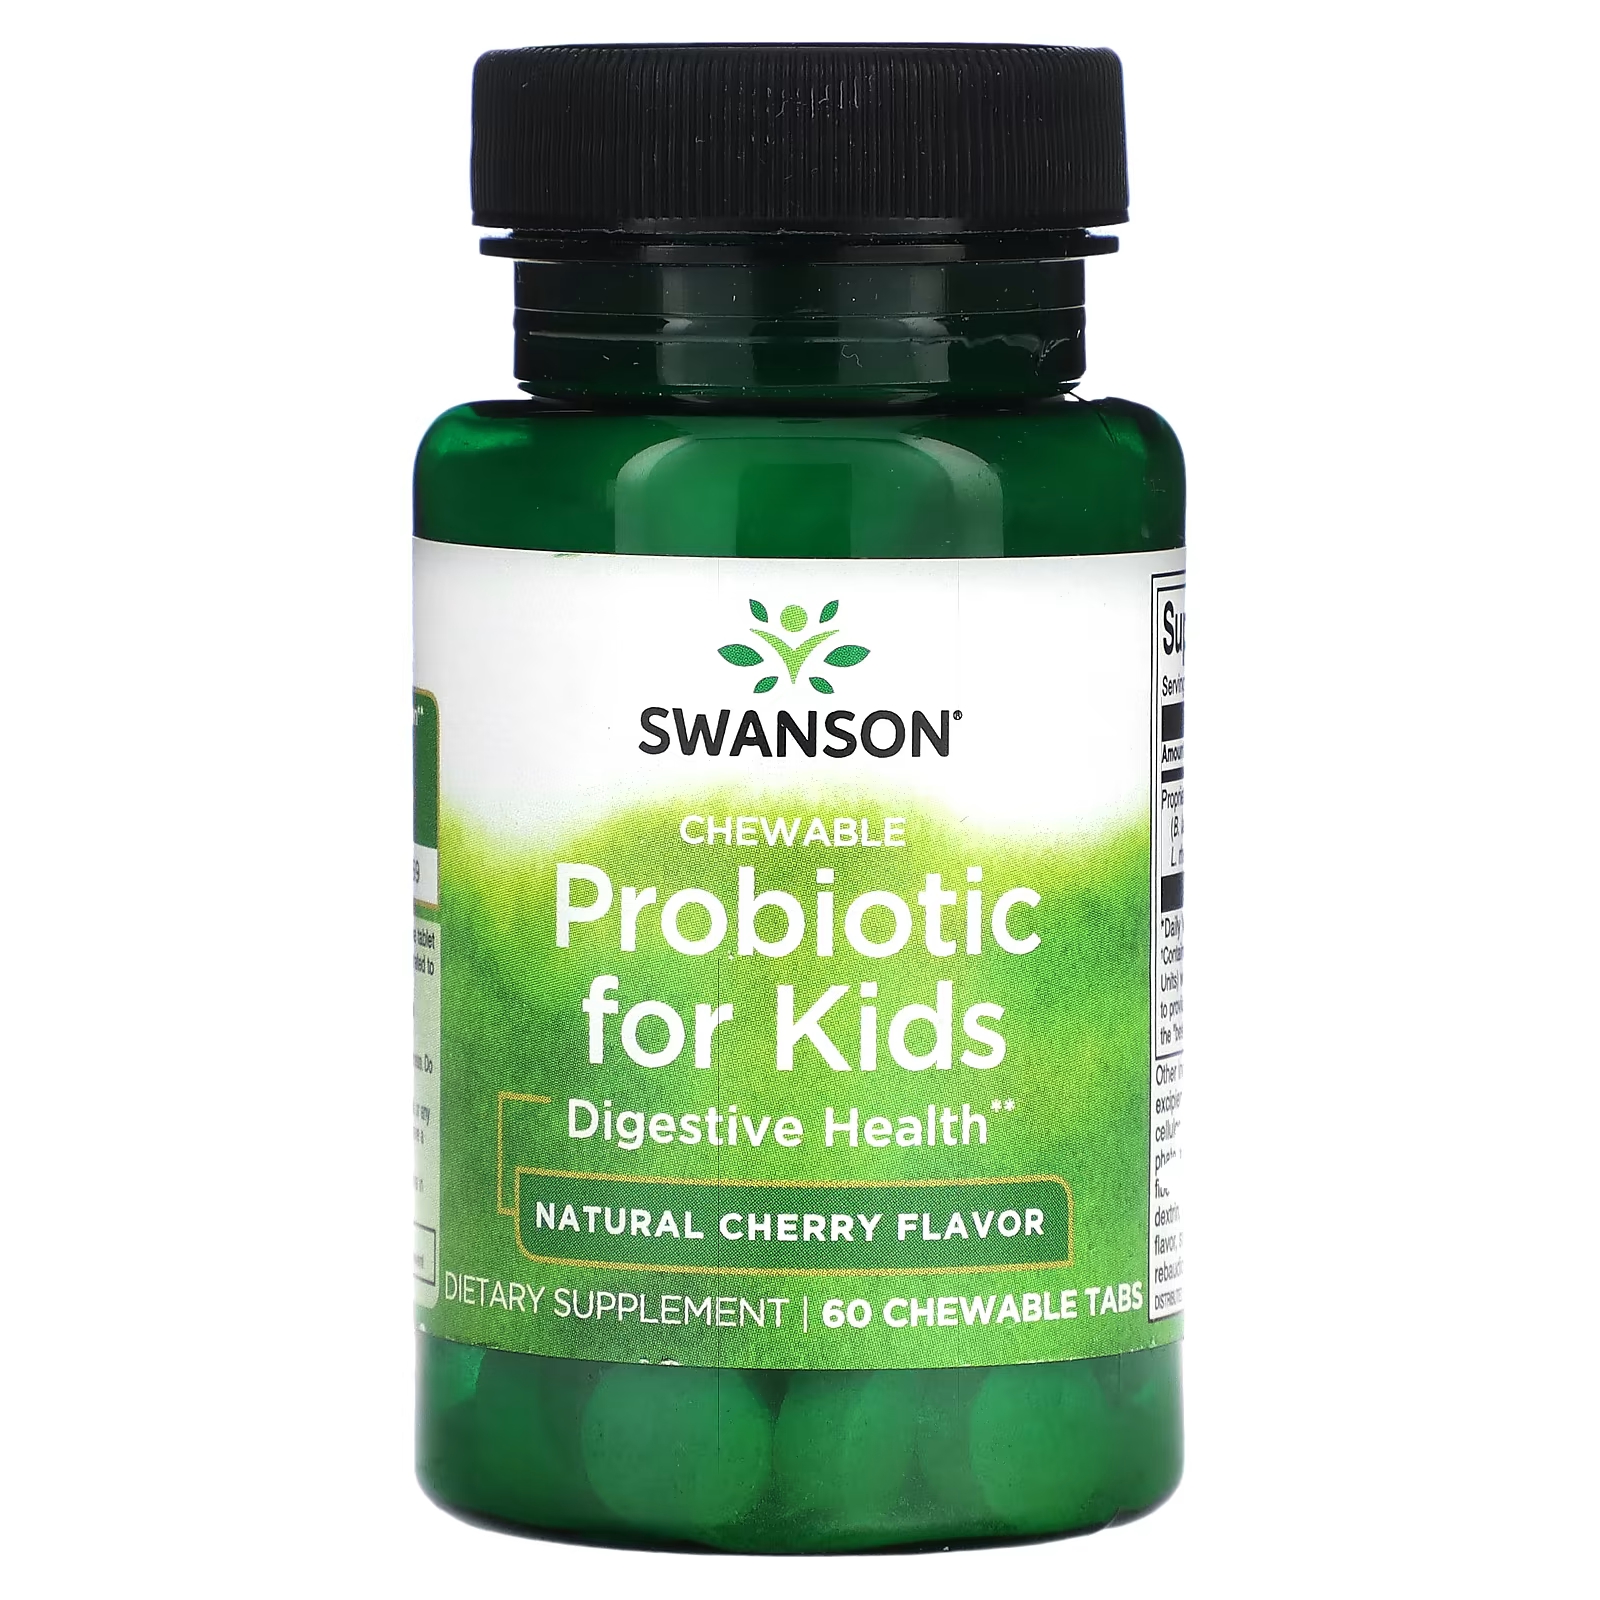 Пробиотик для детей Swanson, натуральная вишня, 60 жевательных таблеток swanson пробиотик для детей натуральная вишня 60 жевательных таблеток